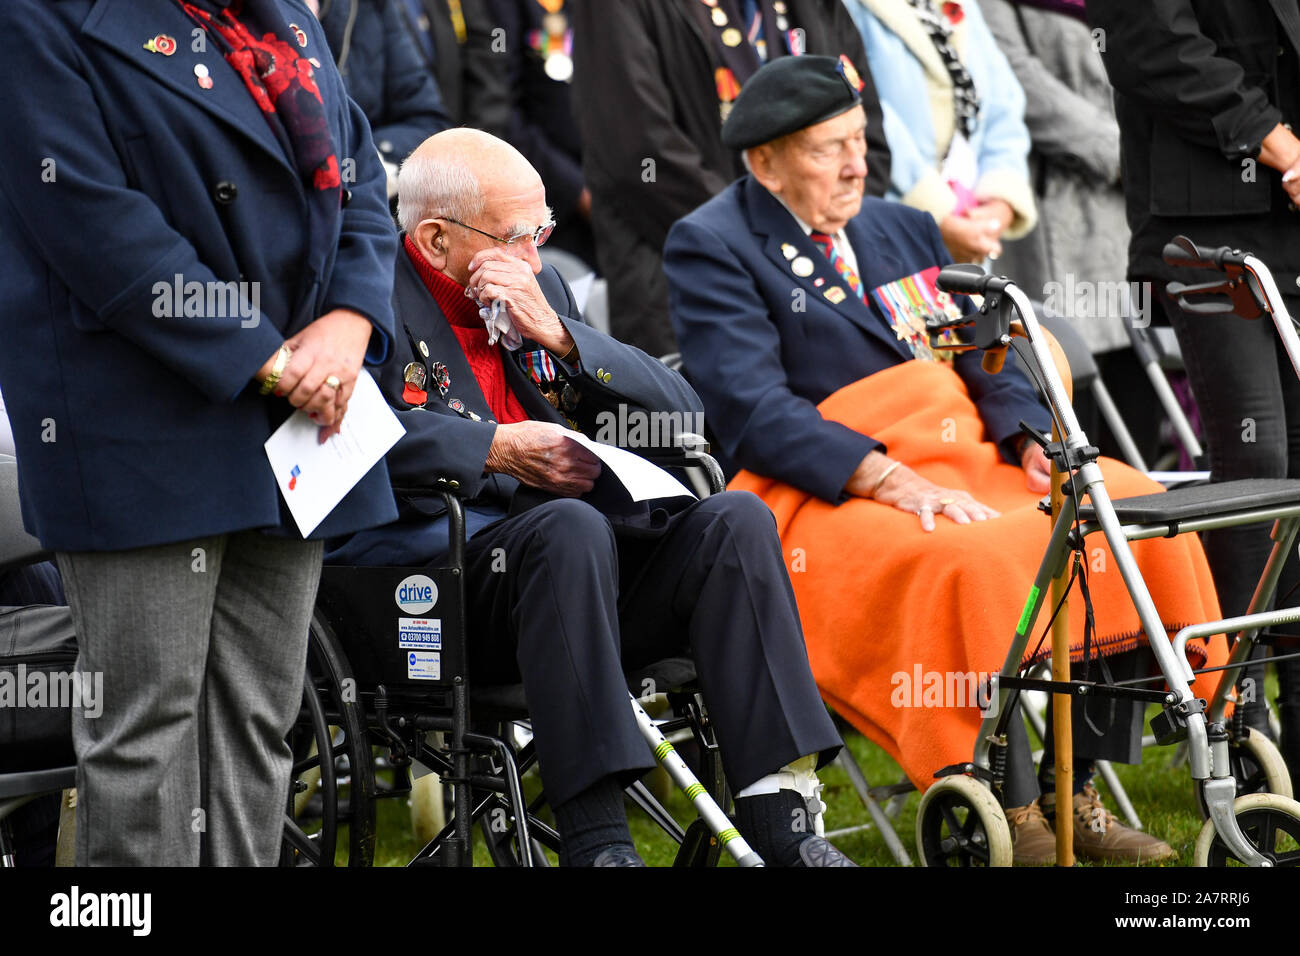 Anciens combattants et membres de leur famille au cours d'un service à l'ouverture officielle de la Royal British Legion 2019 Domaine du souvenir à la National Memorial Arboretum à Alrewas, Staffordshire. Banque D'Images